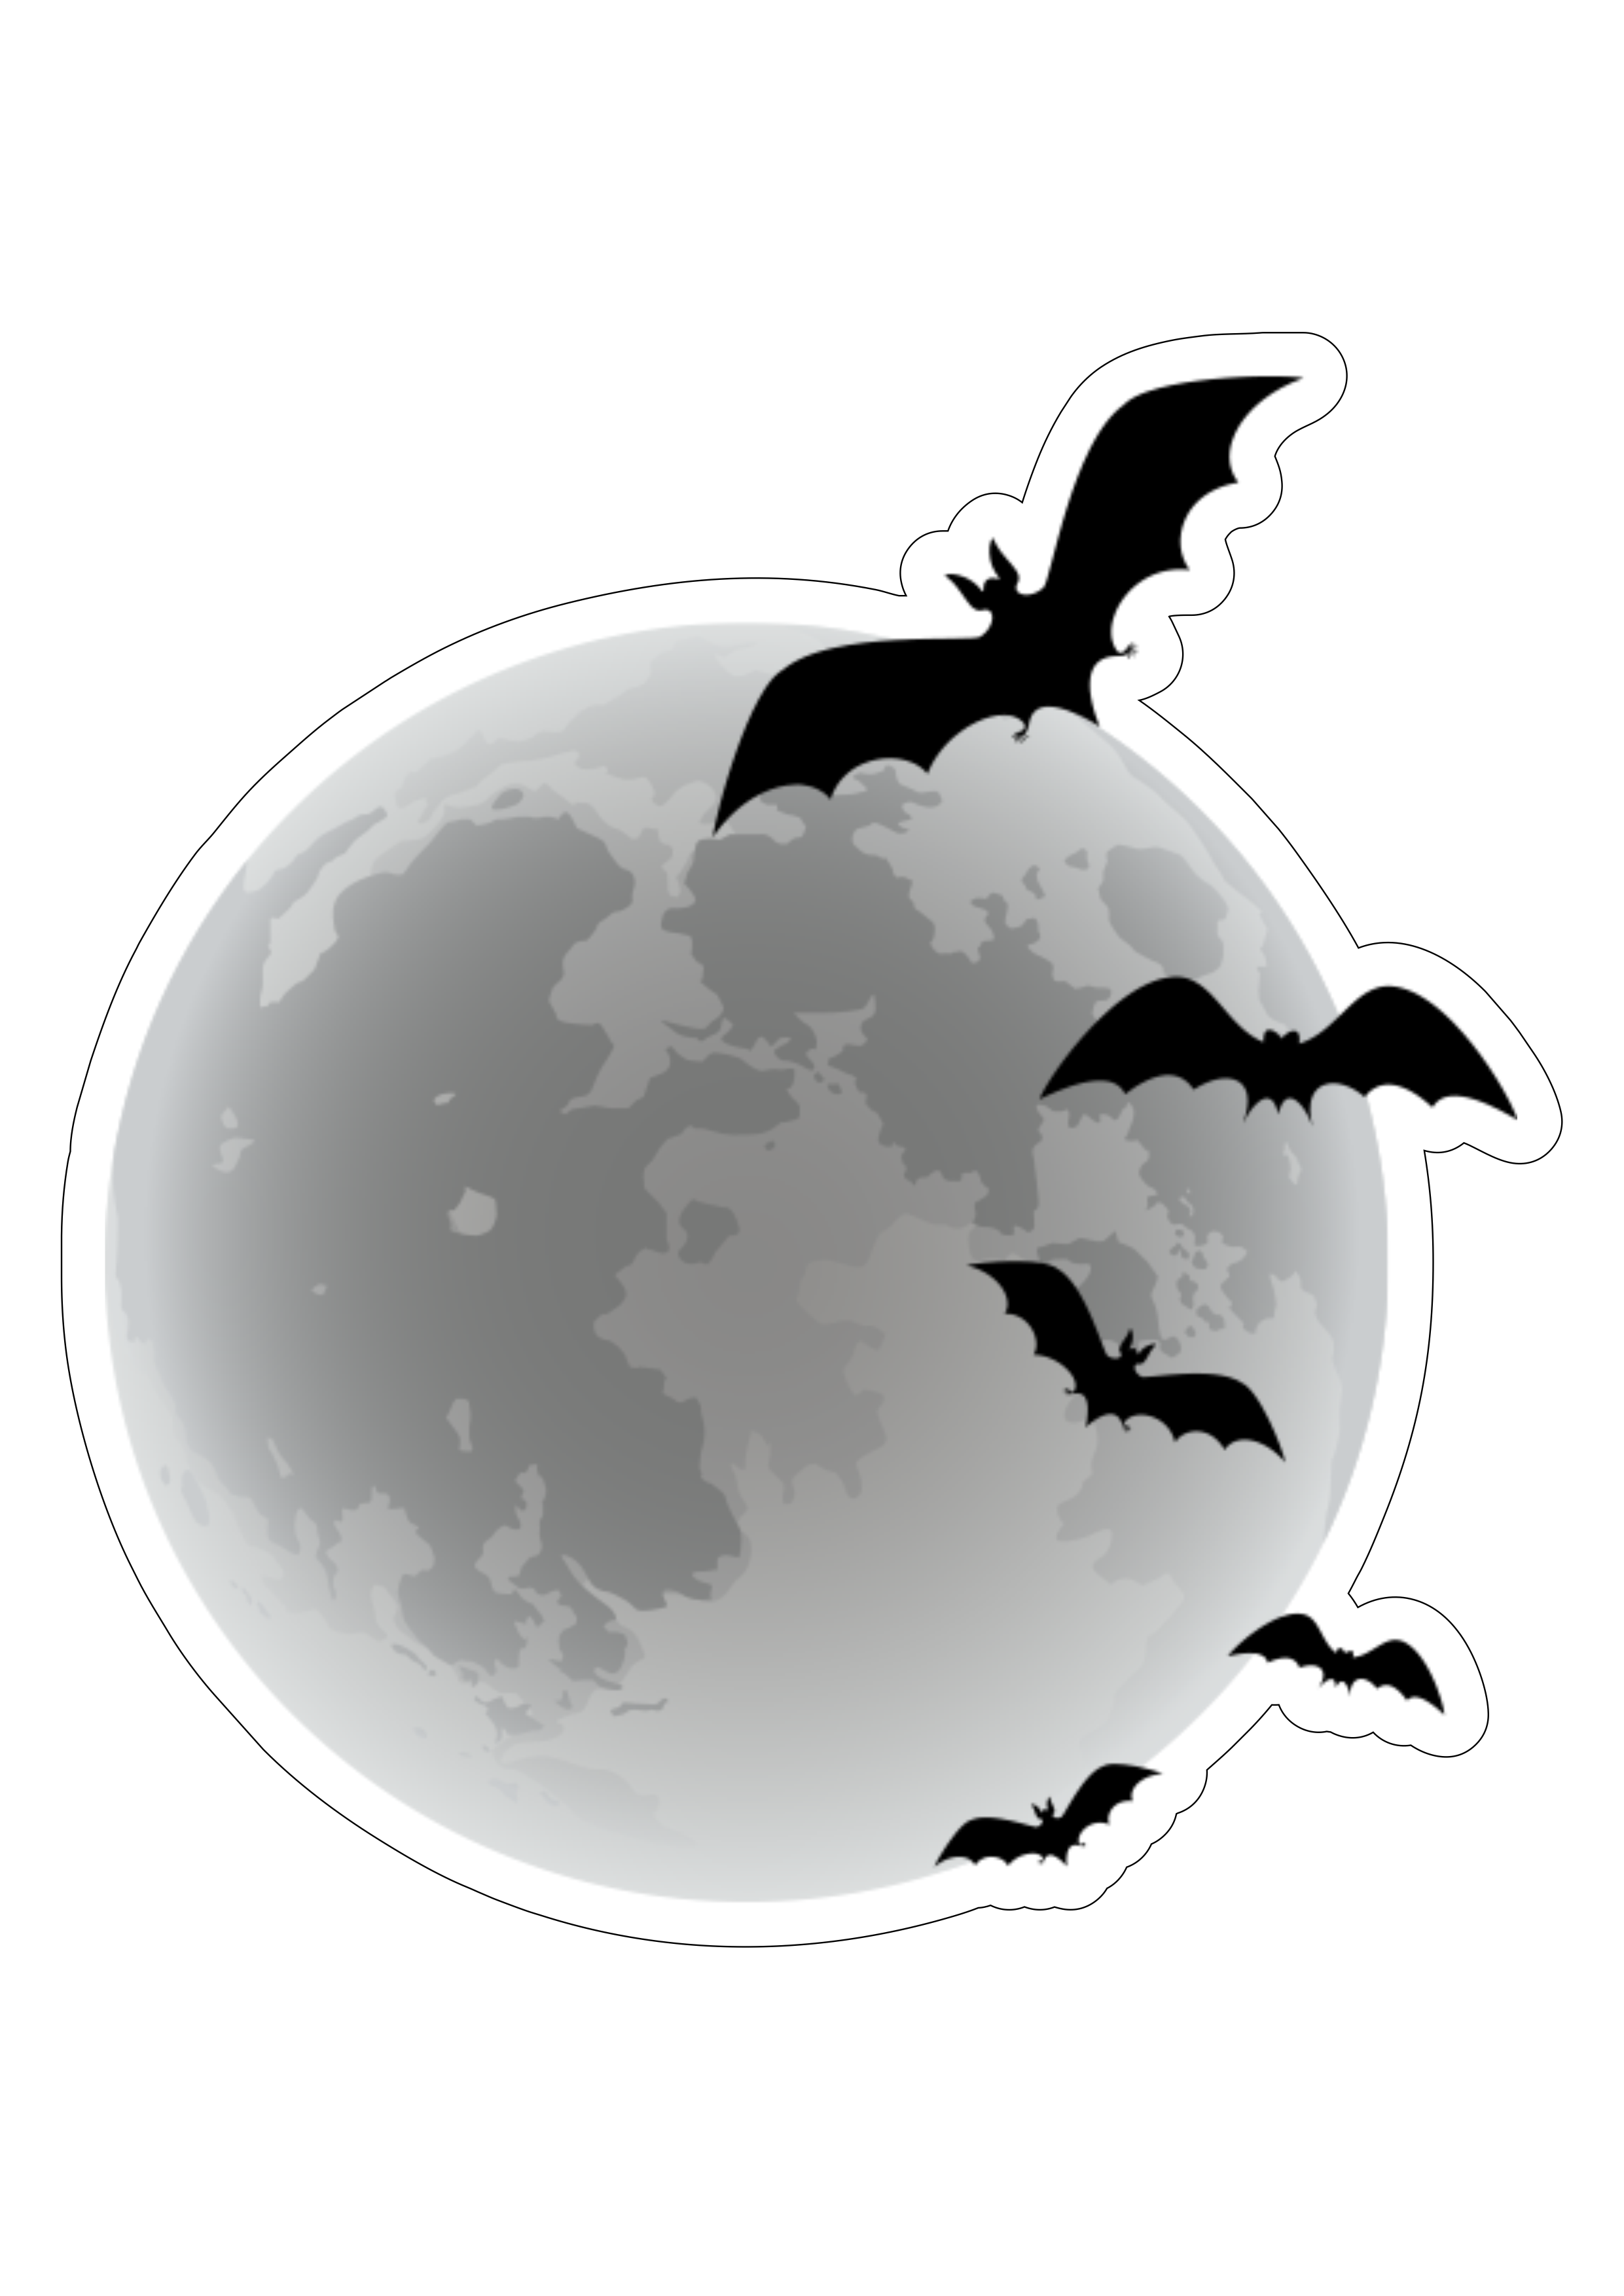 Wandinha wednesday lua morcegos netflix série festa imagem fundo transparente design contorno png